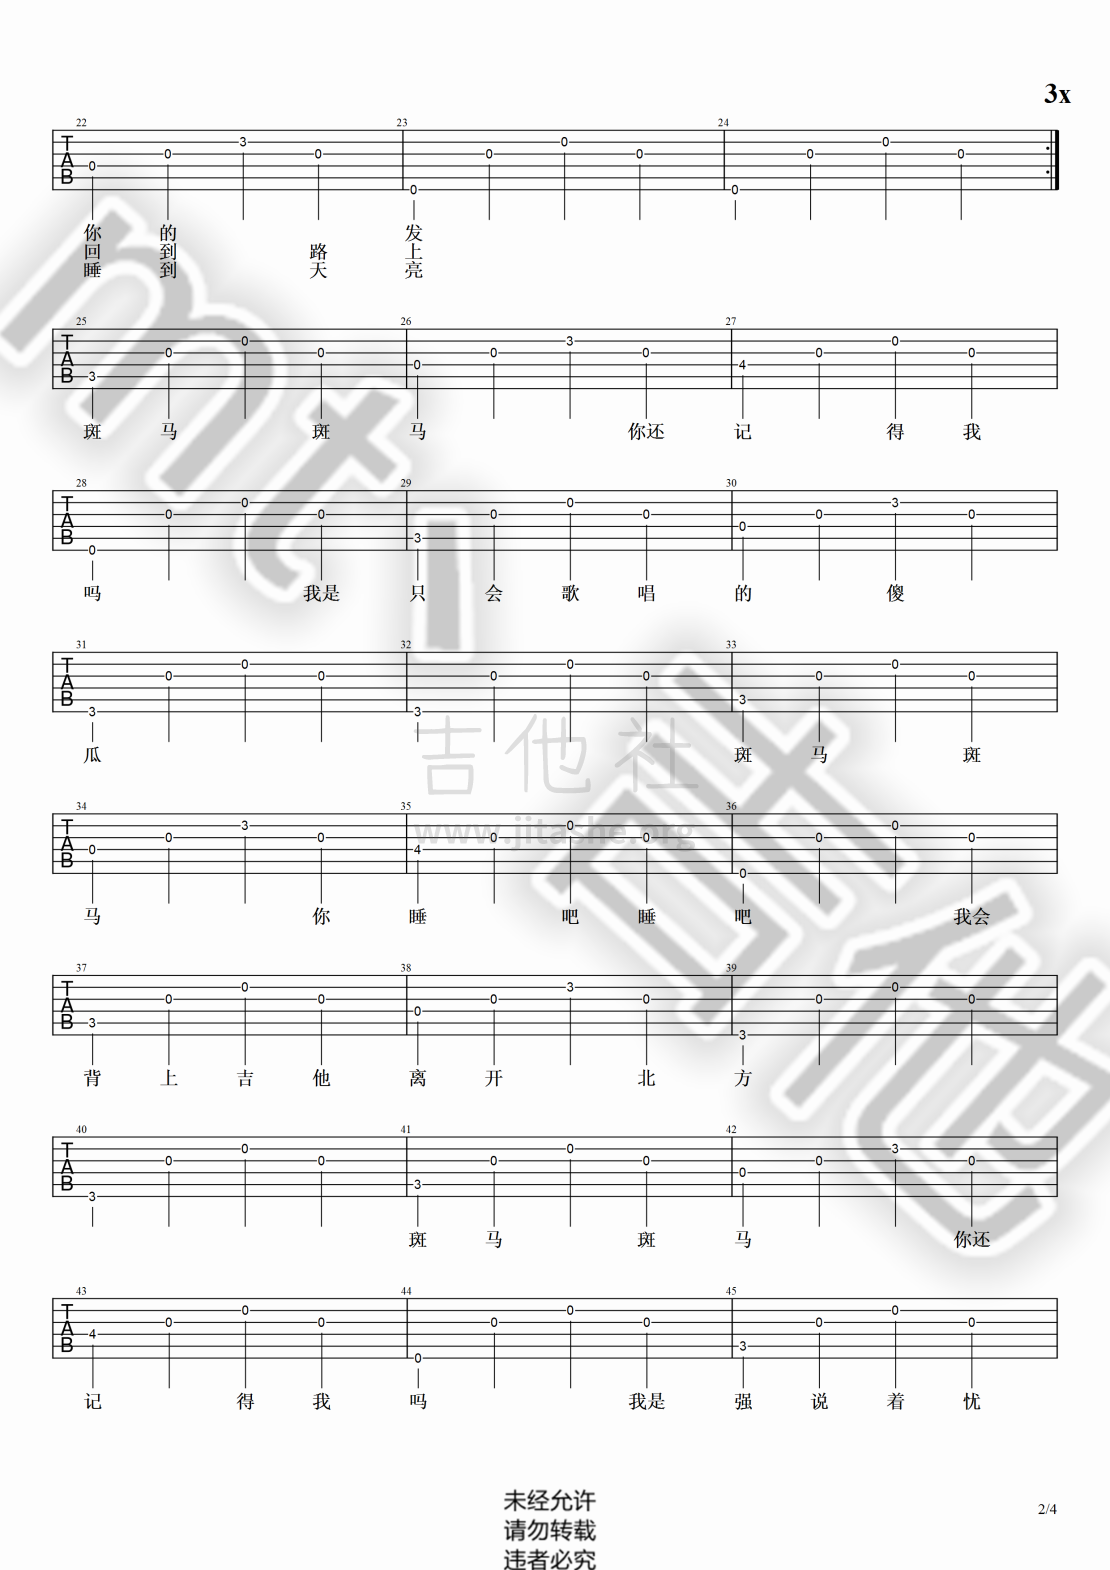 打印:斑马斑马（超级超级简单简单版！！！！）吉他谱_宋冬野_斑马斑马#2.png